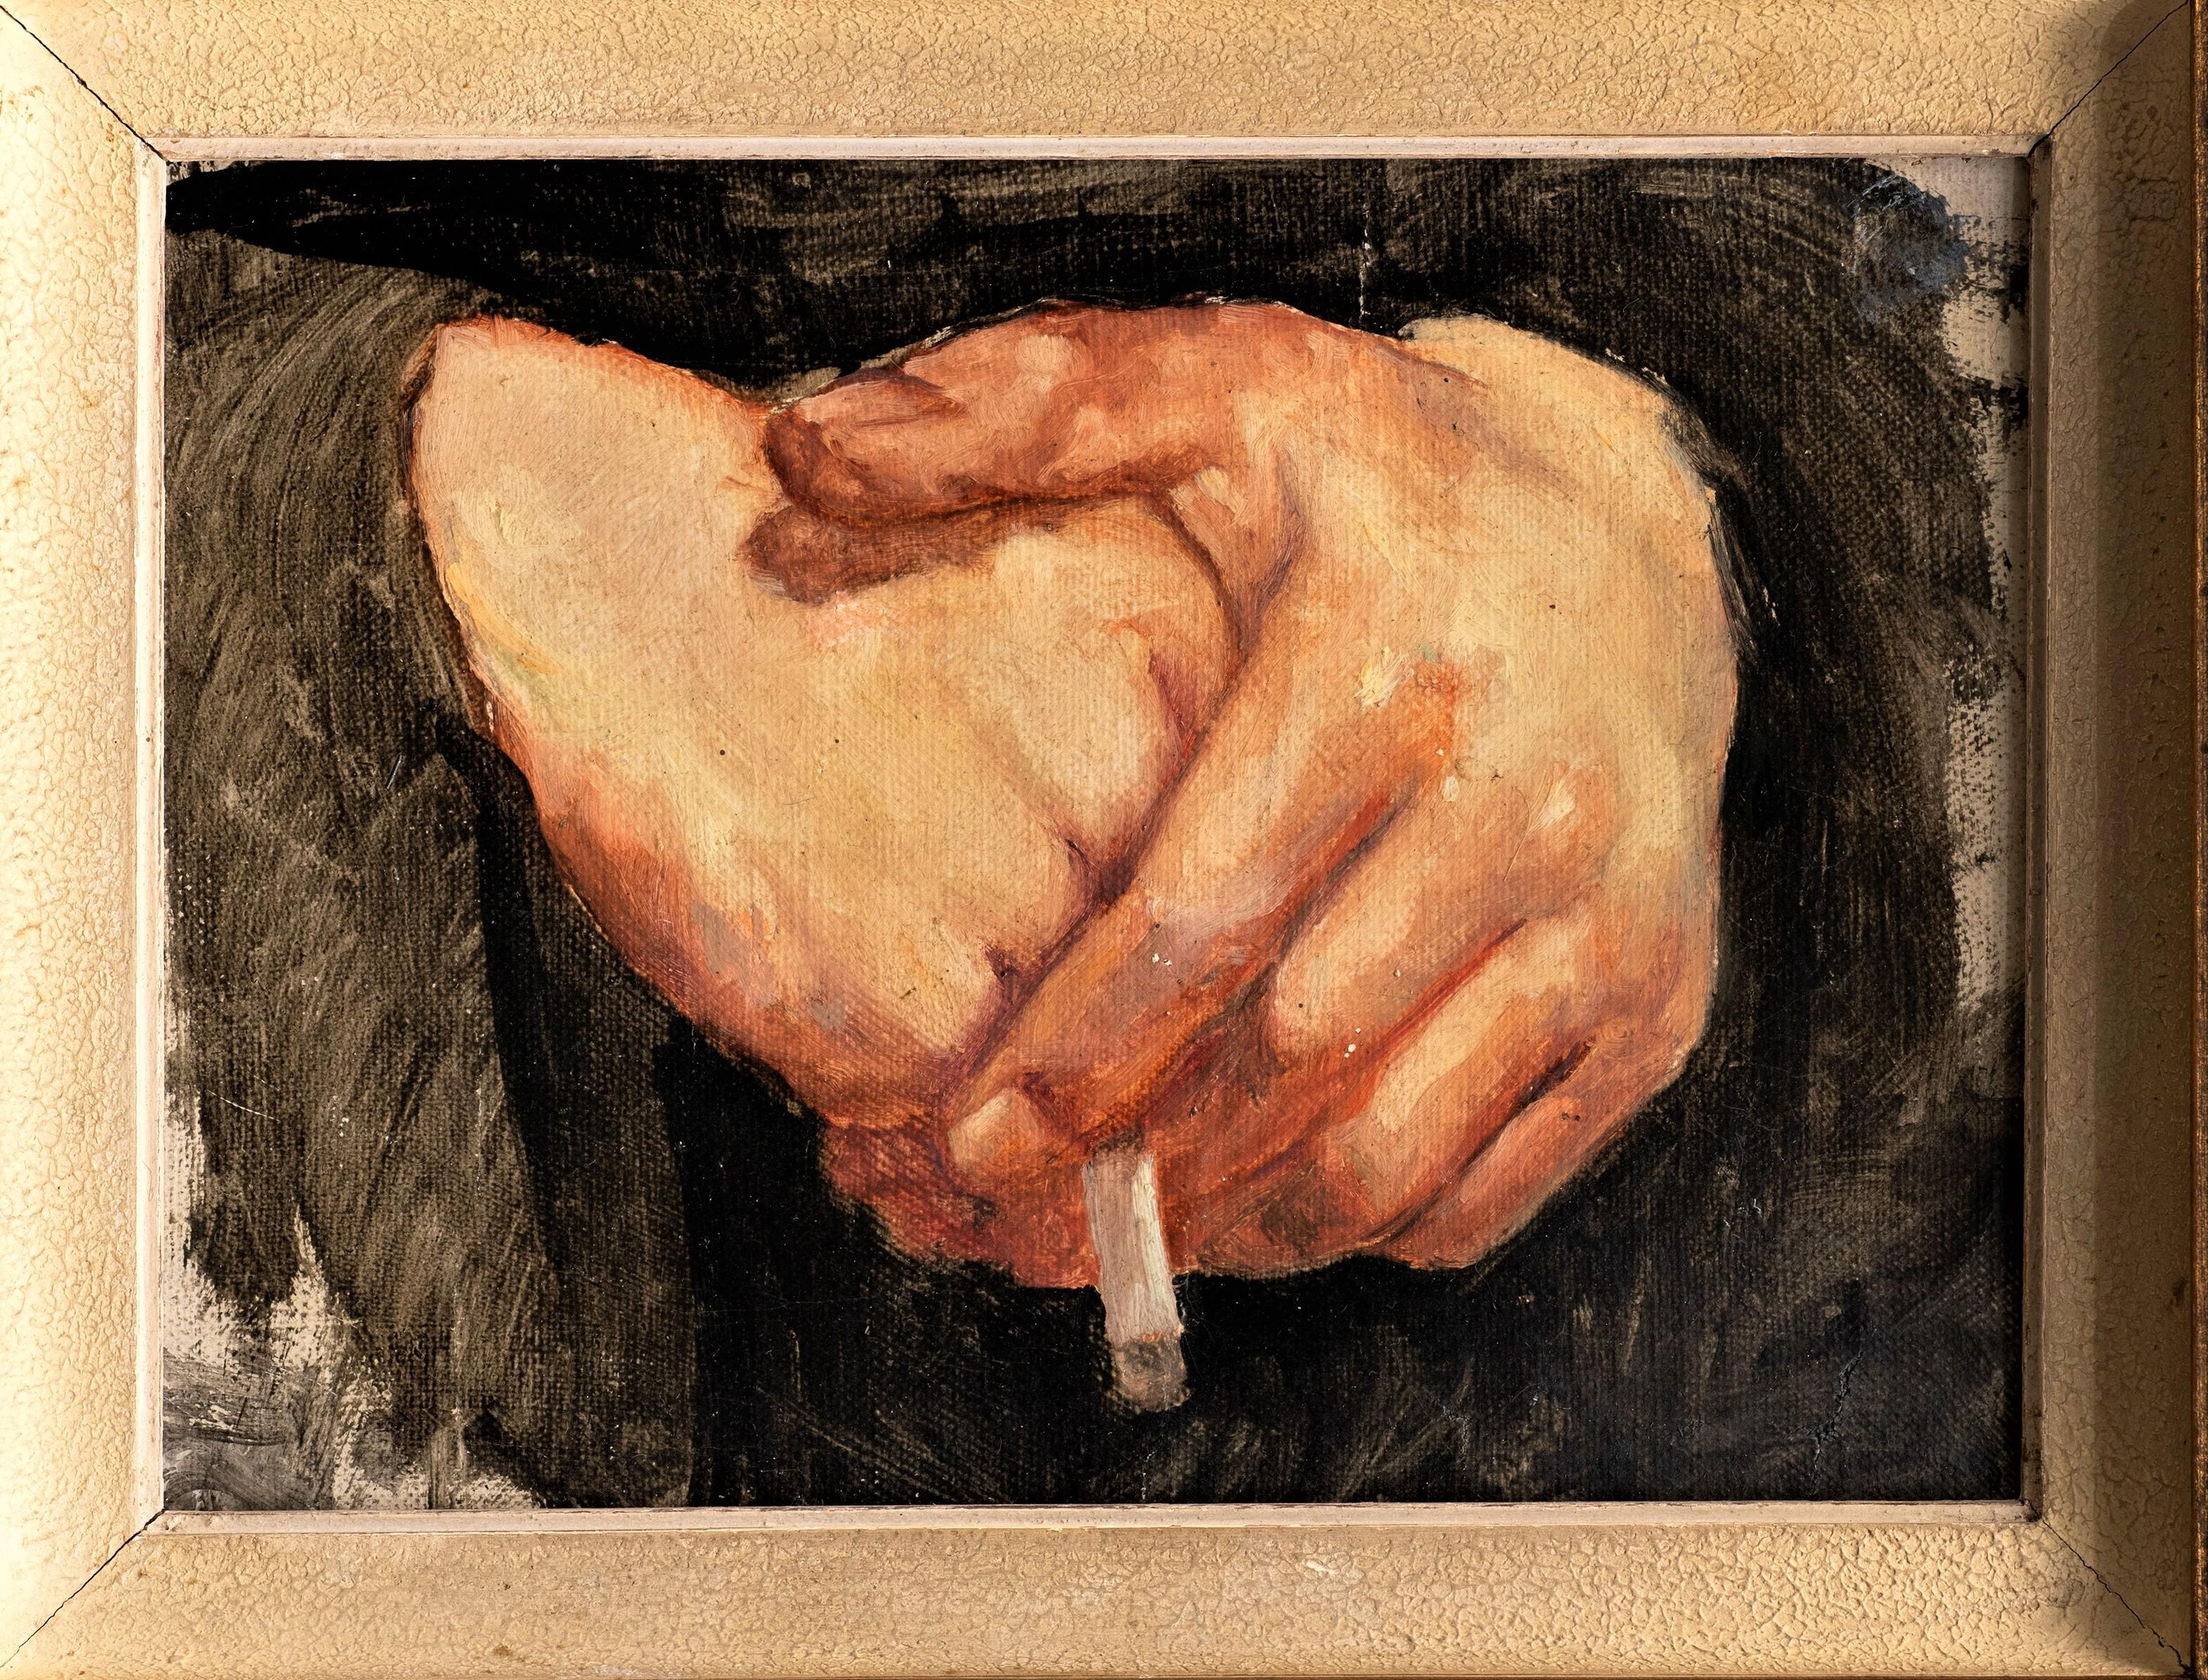 Study of a Hands with a Cigarette - Französisches, frühes 20. Jahrhundert – Painting von Unknown